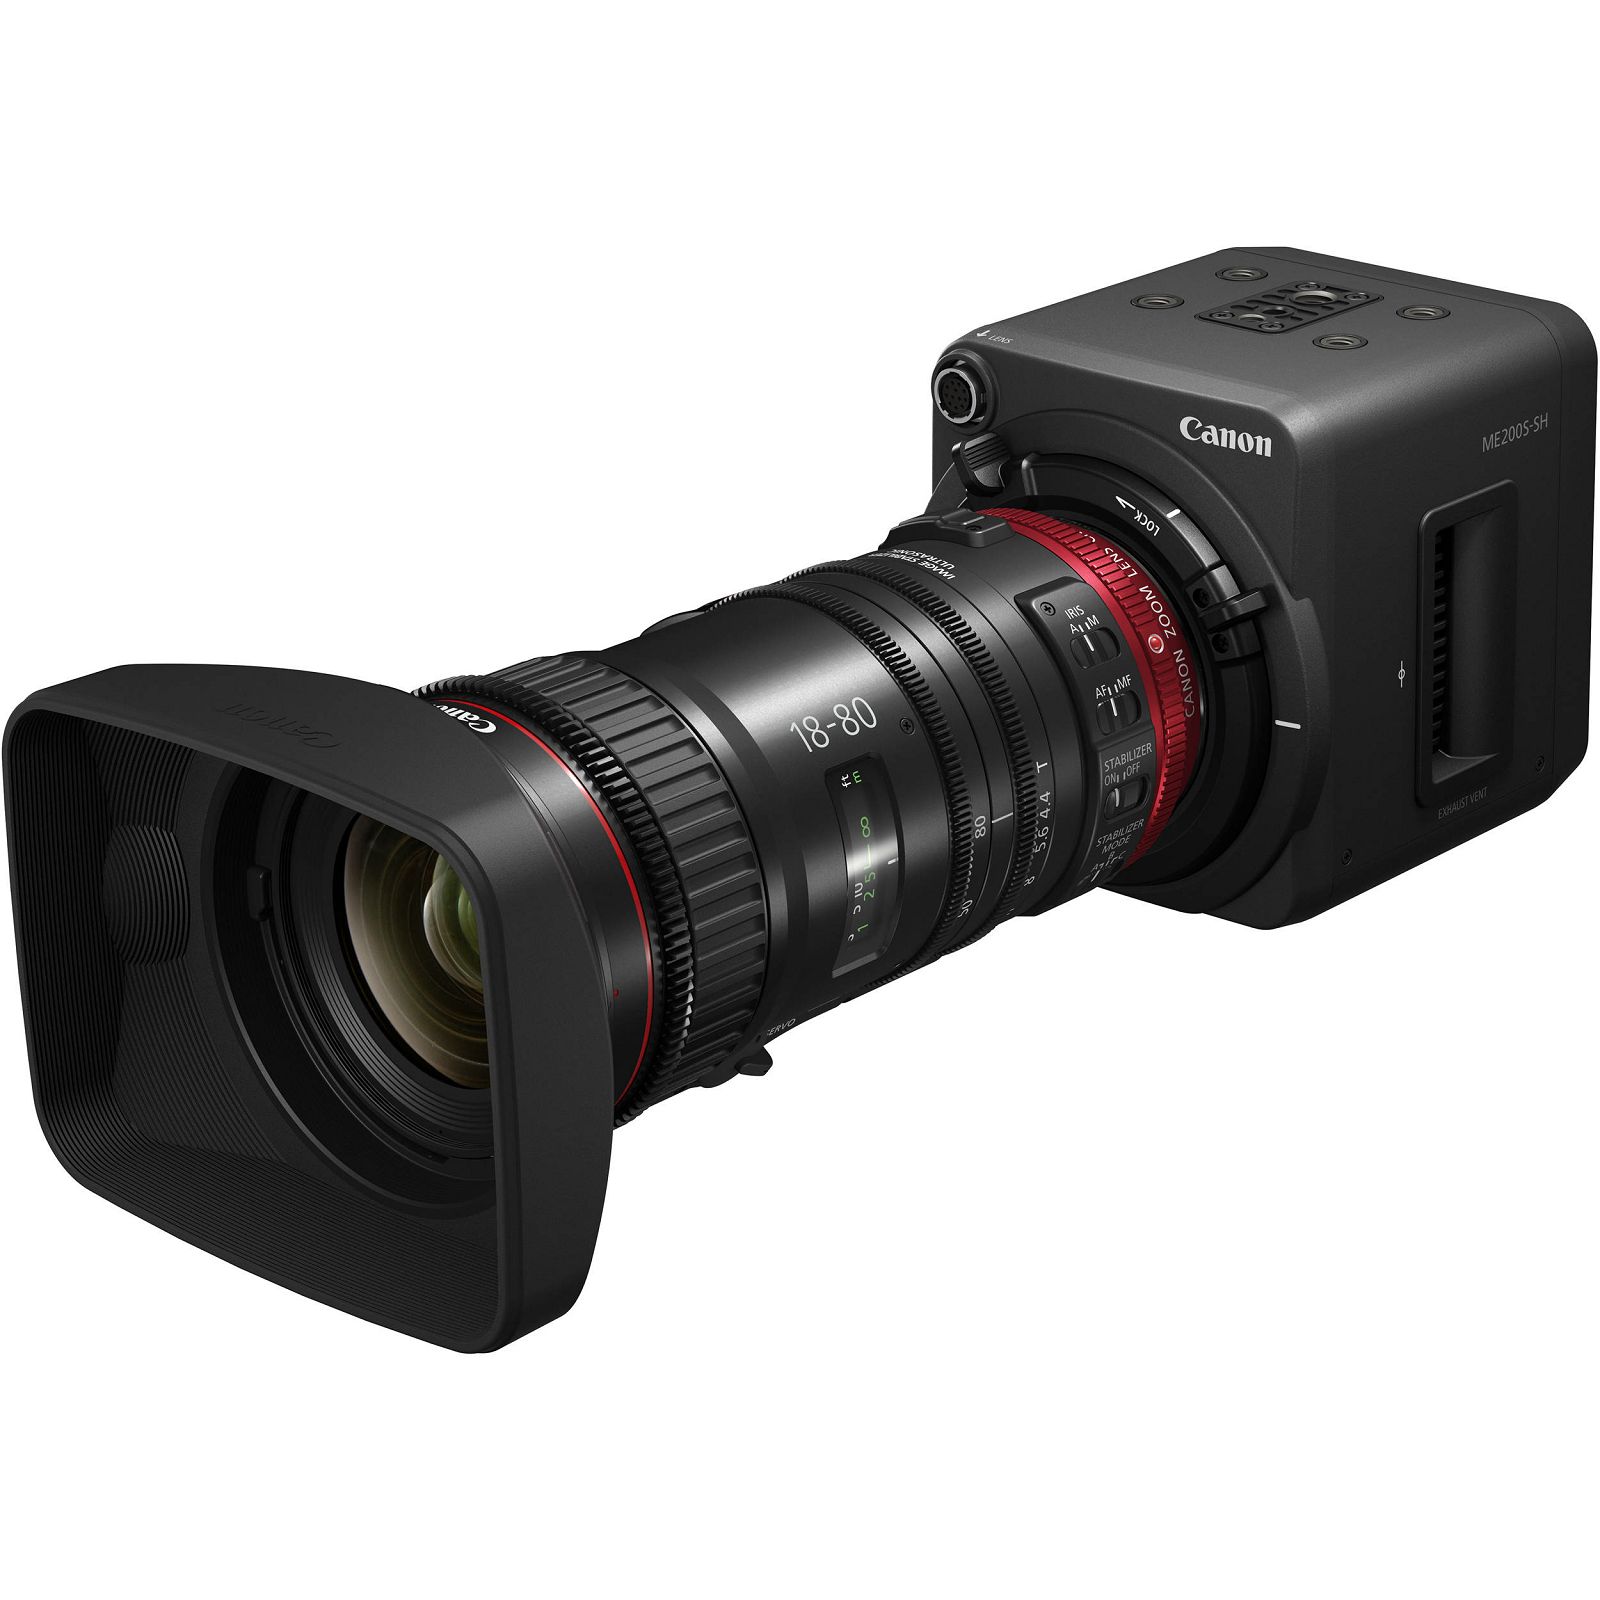 Canon ME200S-SH Super 35mm Multi-Purpose Camera